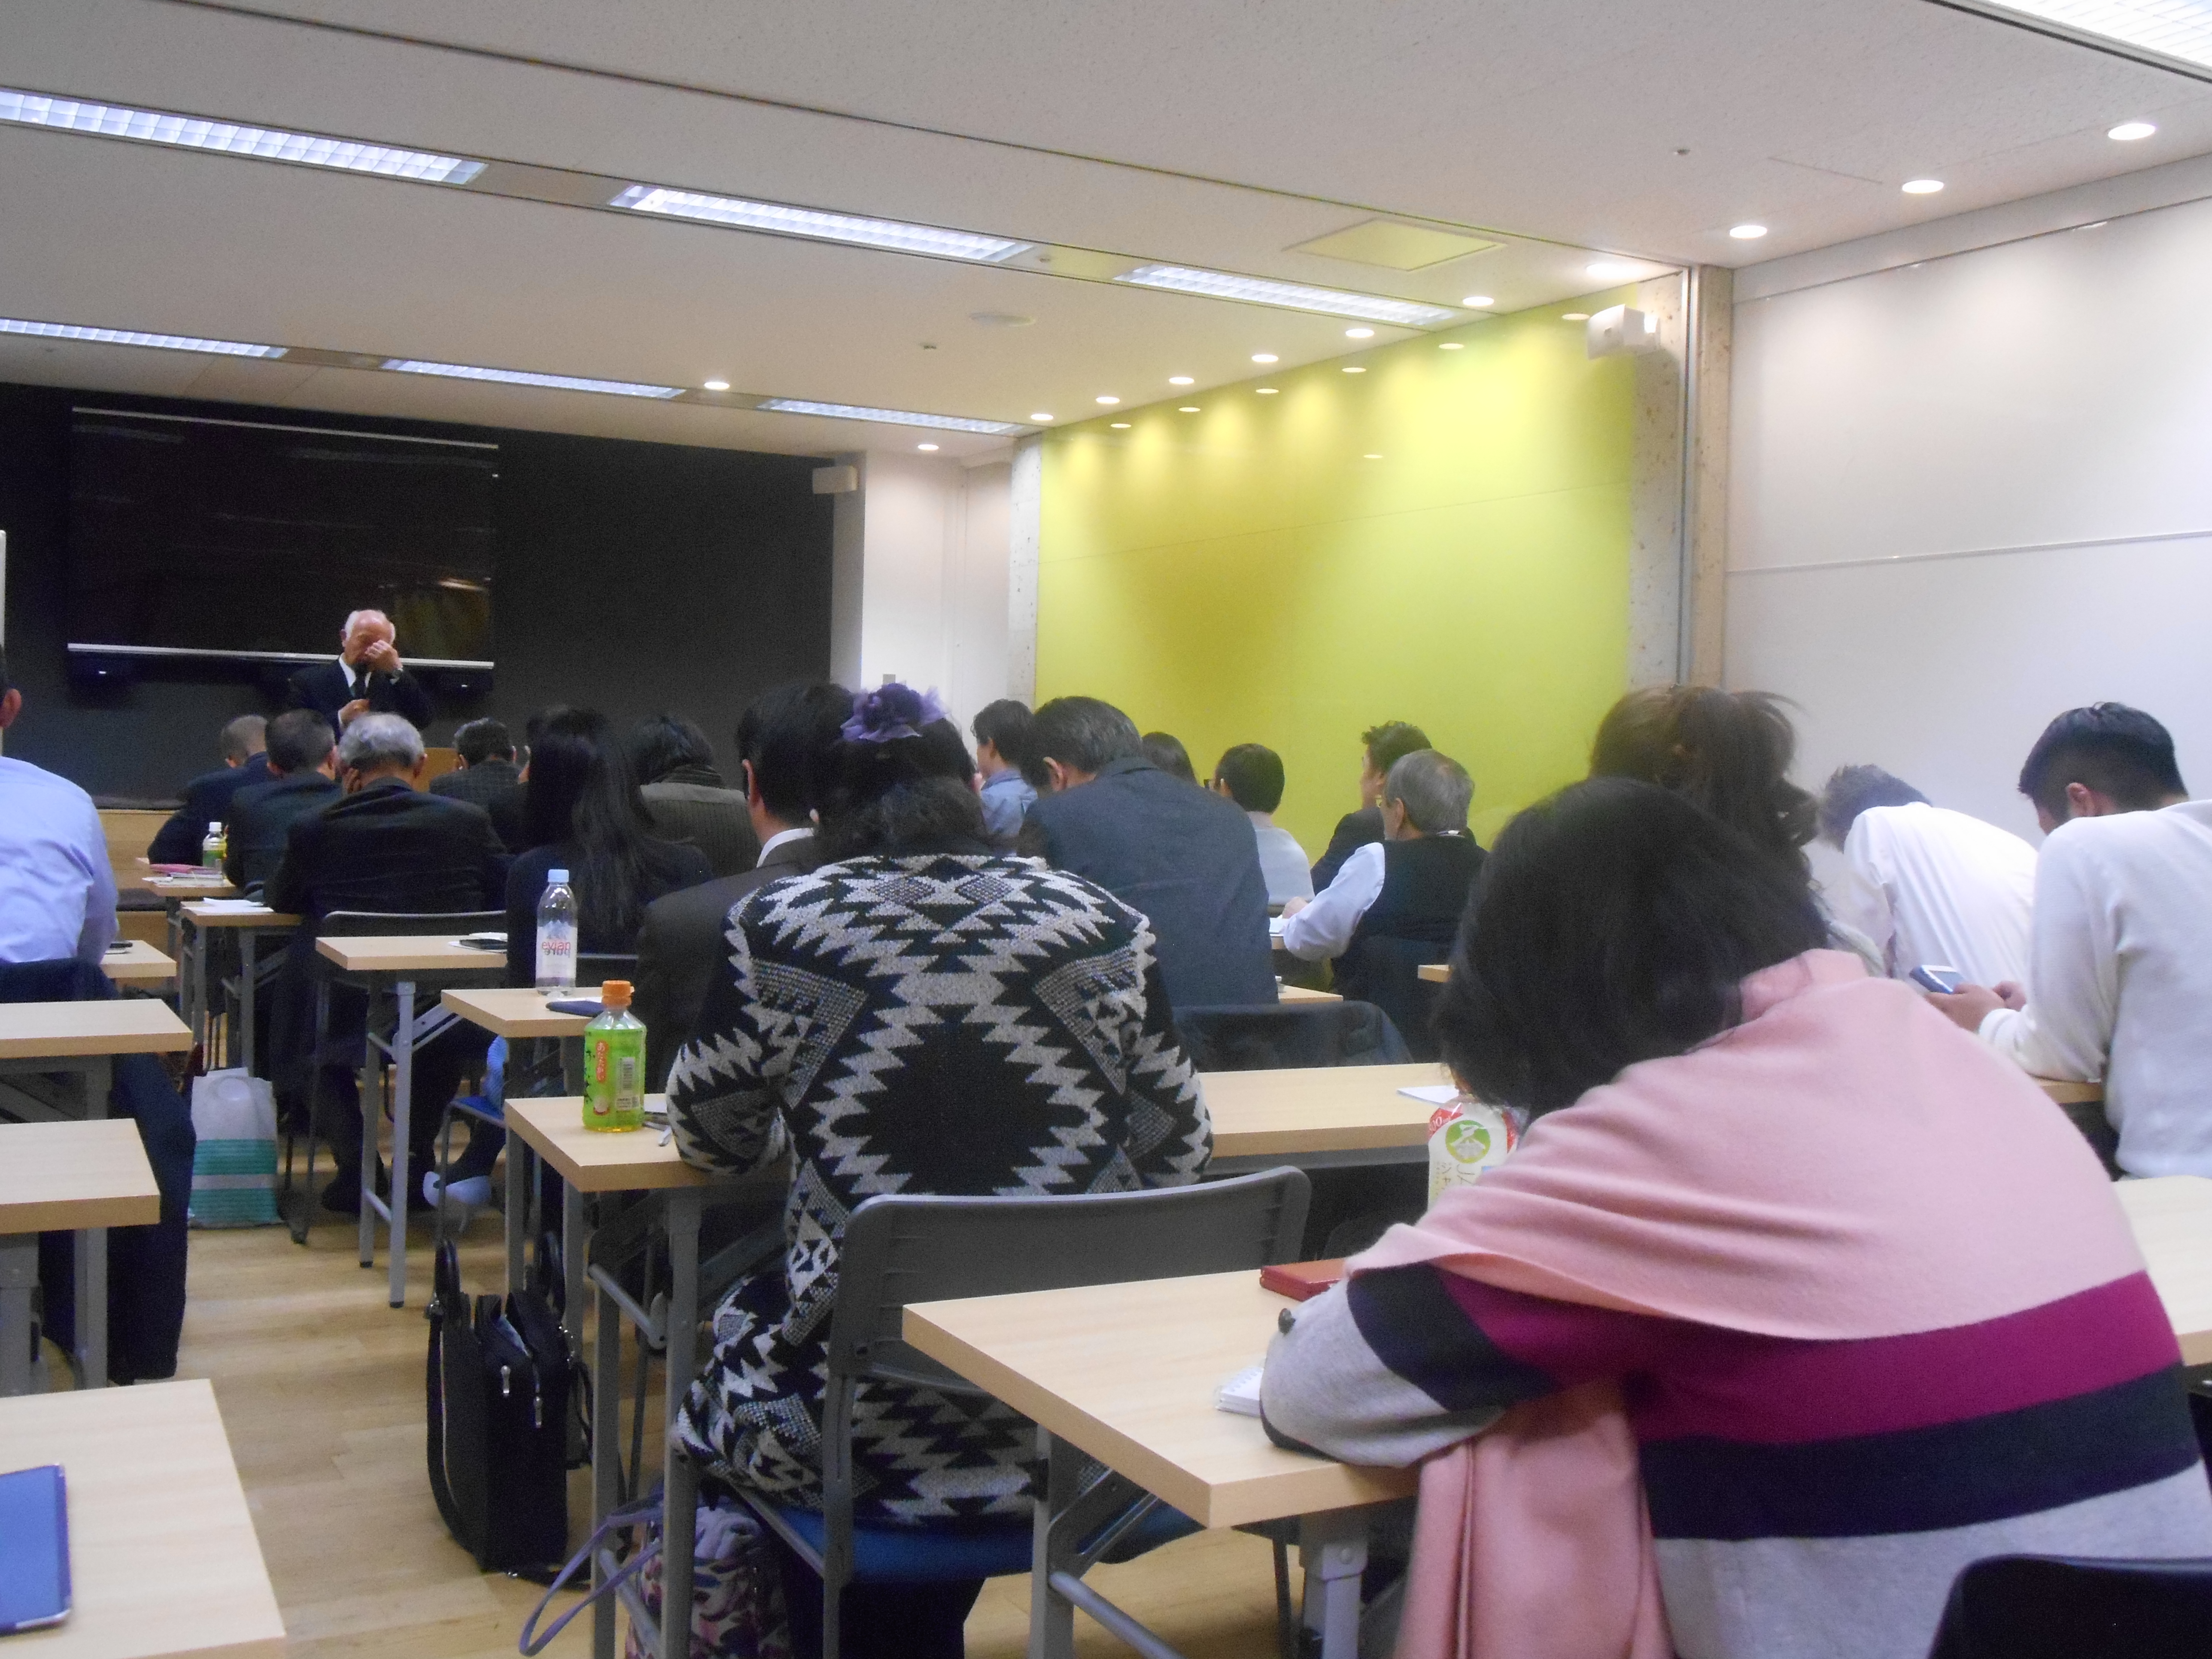 DSCN0058 - 平成29年度 東京思風塾2月4日開催しました。